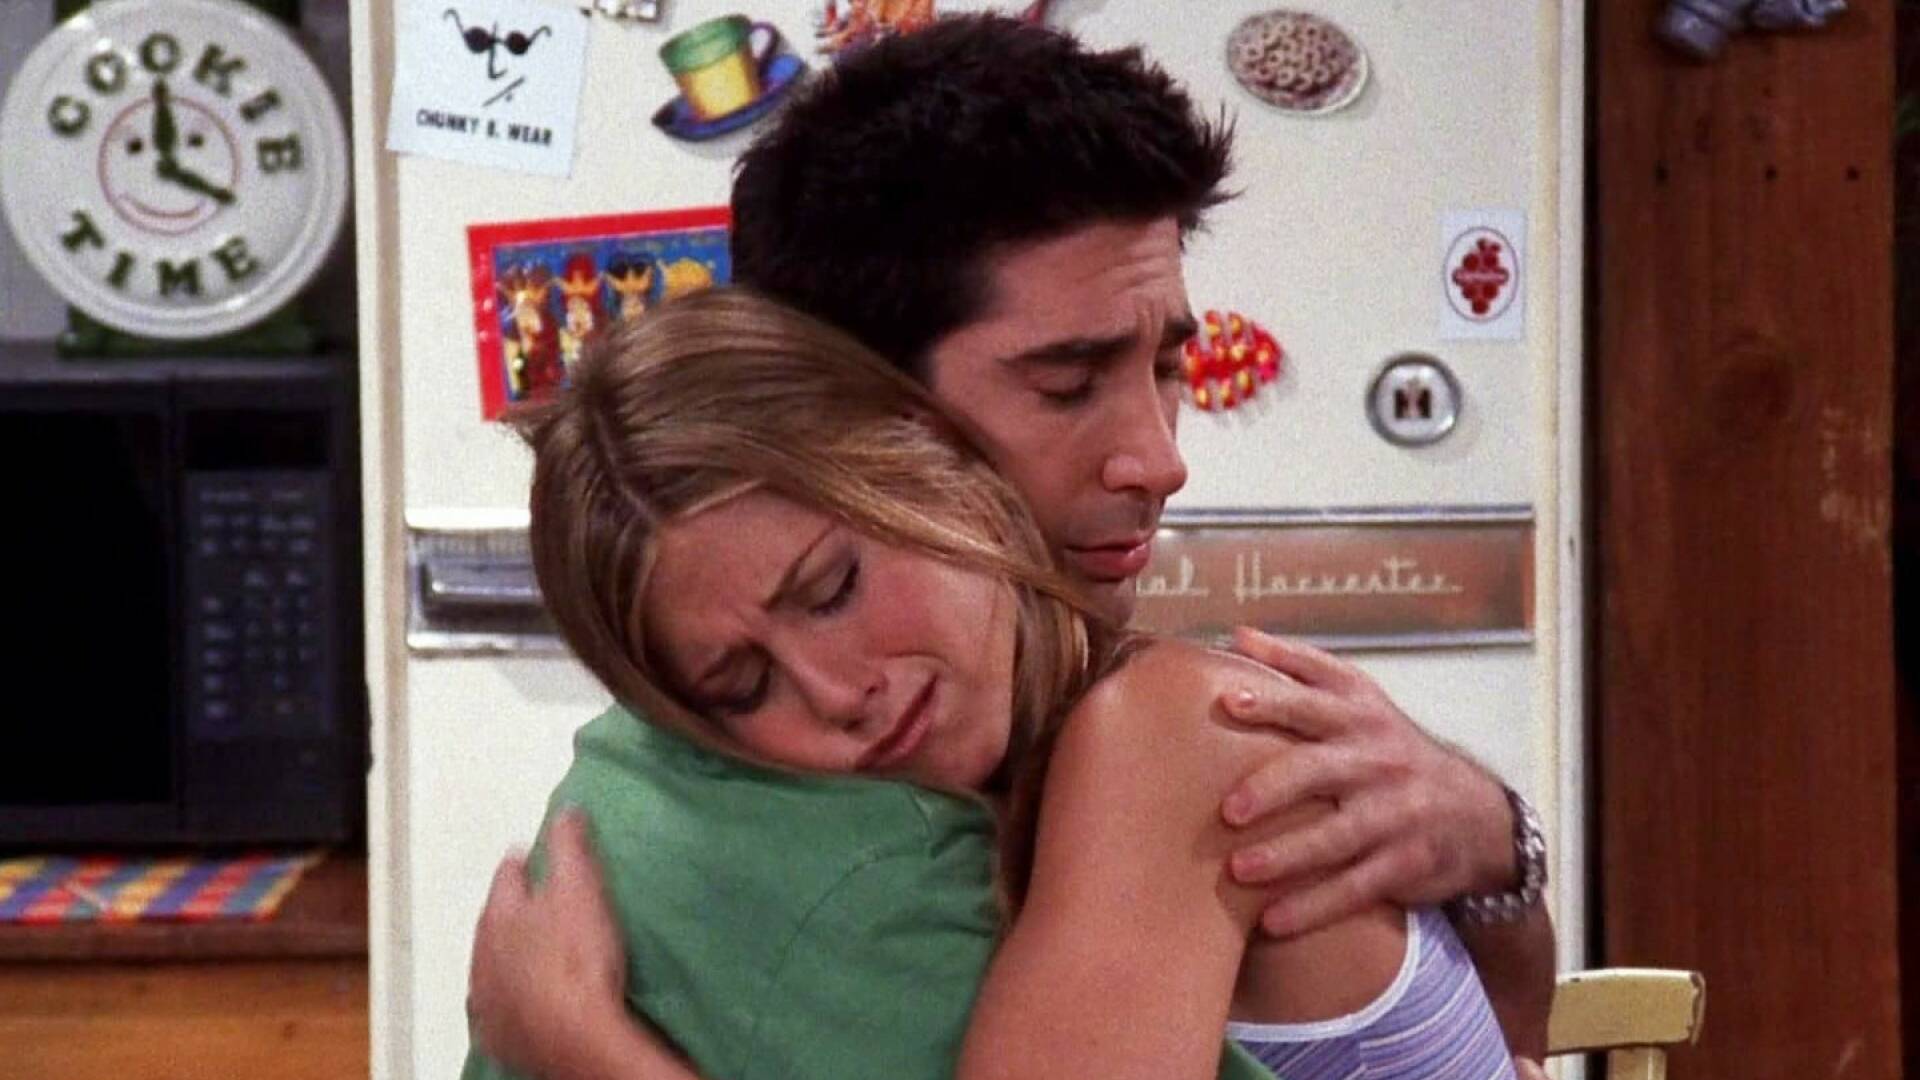 Friends temporada 6 - Ver todos los episodios online